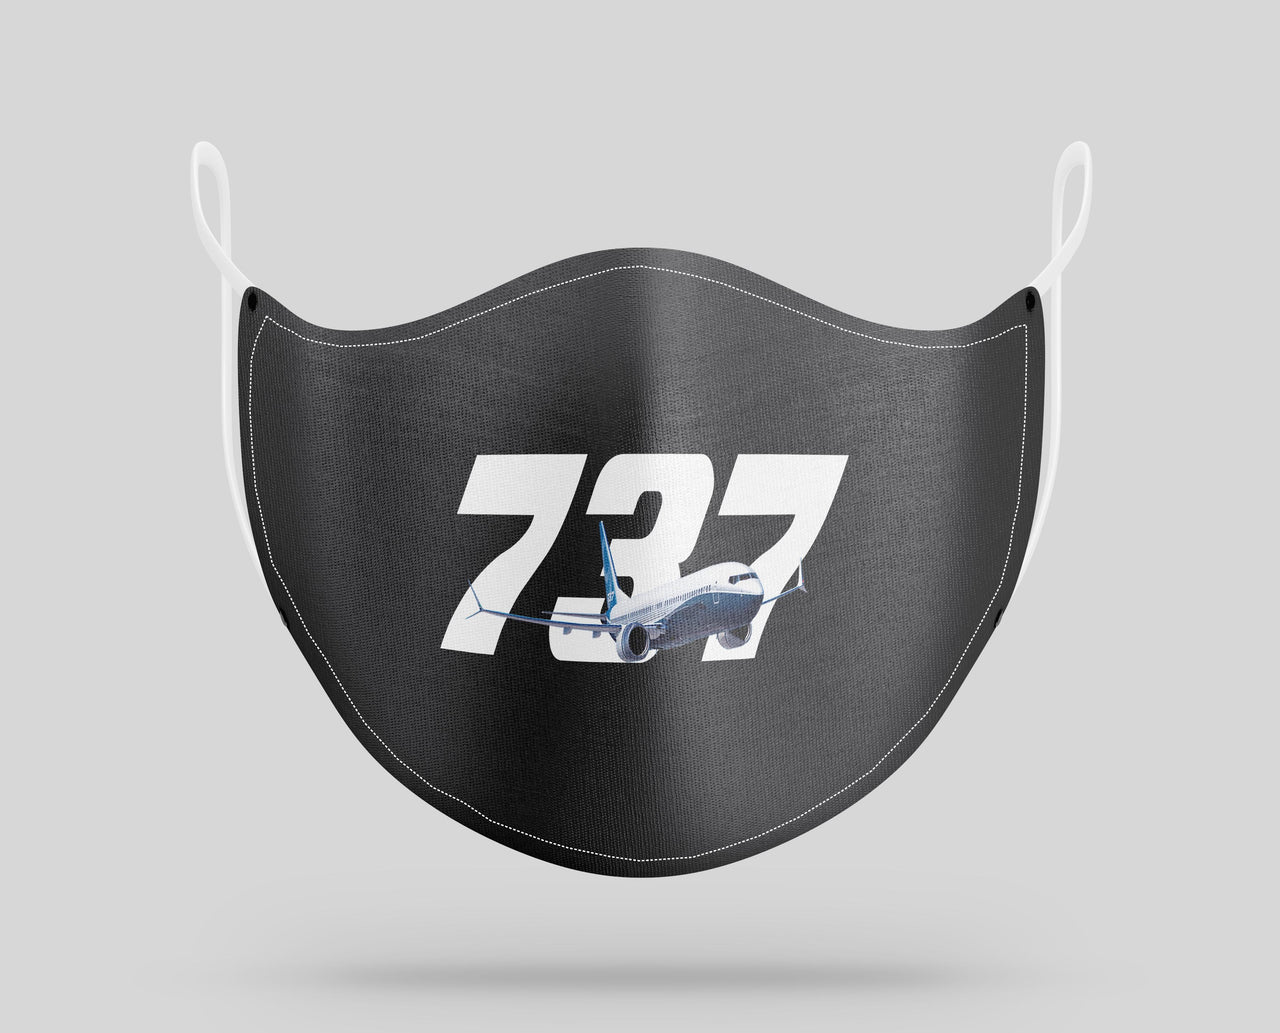 Super Boeing 737 Designed Face Masks